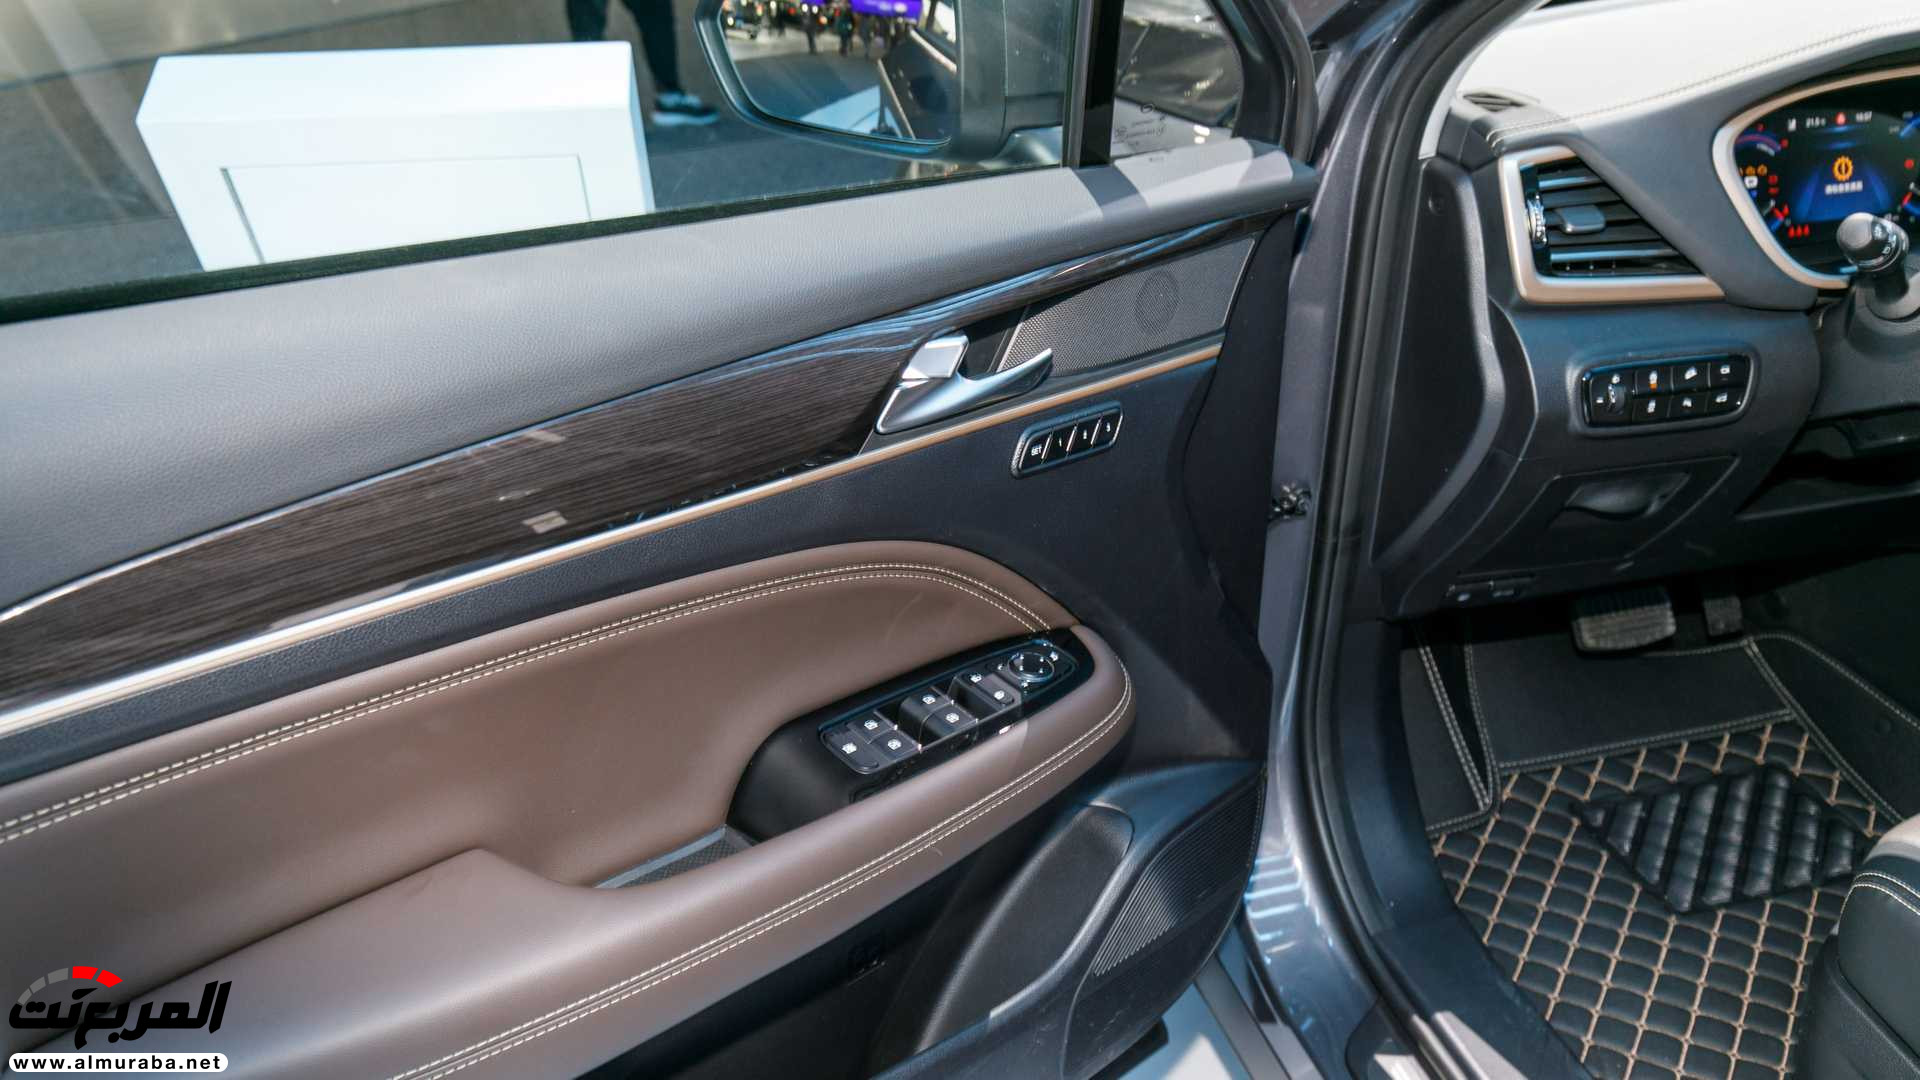 "80 صورة" نظرة على سيارات جي ايه سي في معرض ديترويت للسيارات 2019 240